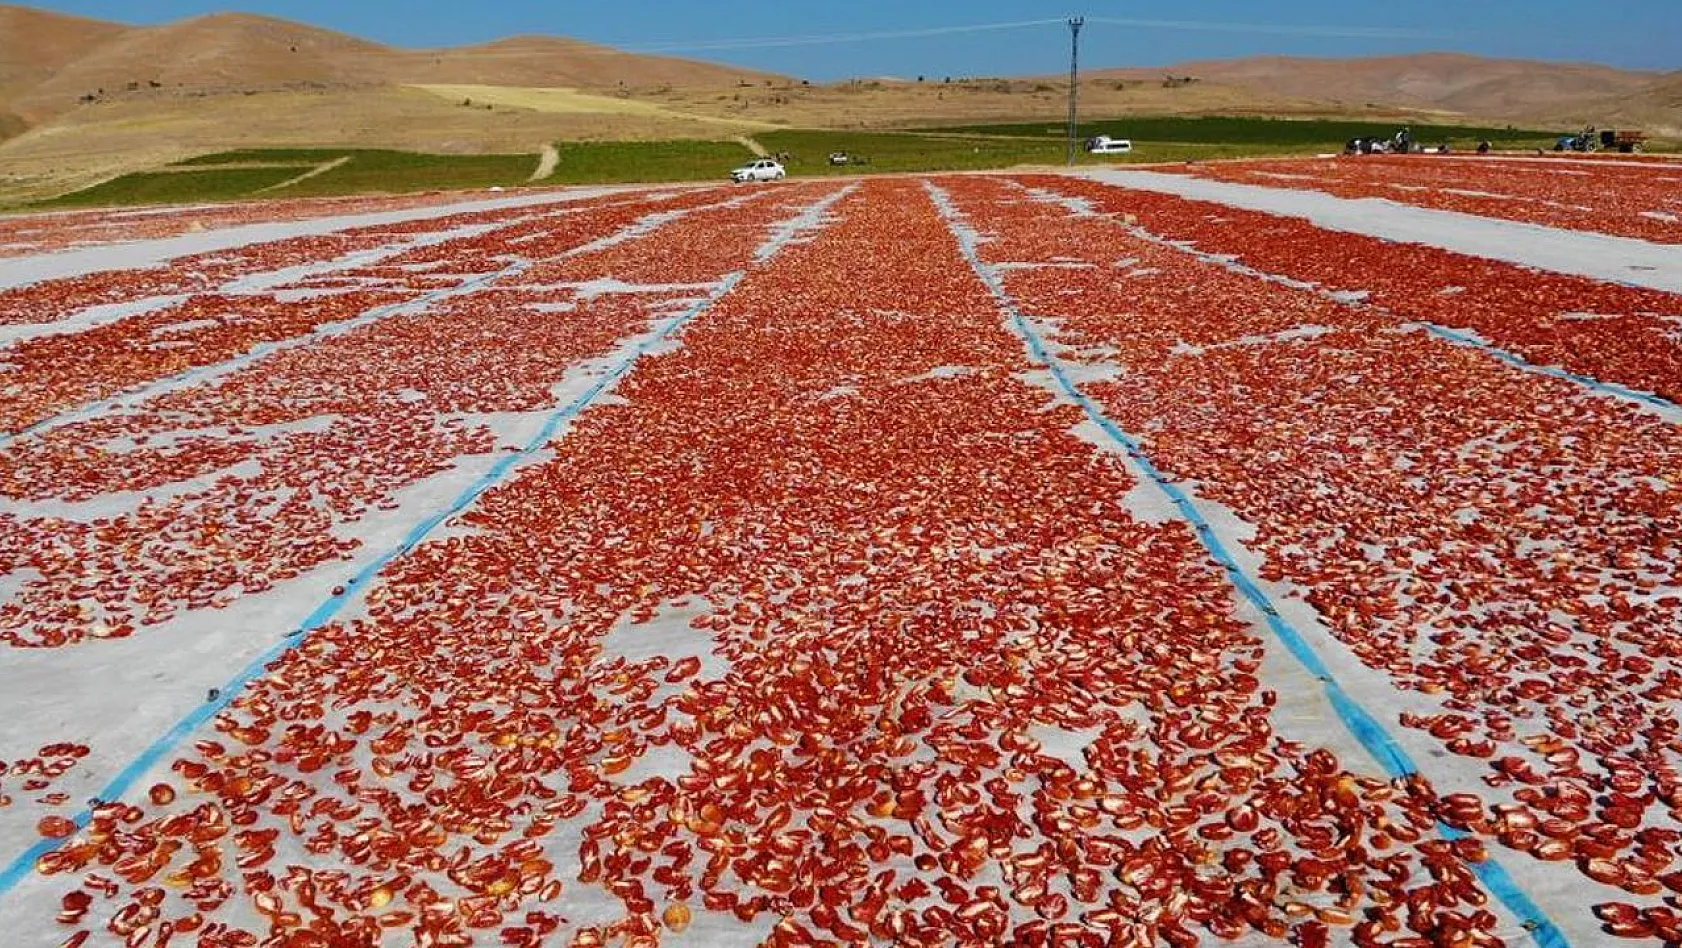 Elazığ'da üretilip kurutulan domatesler, dünya sofralarını süslüyor